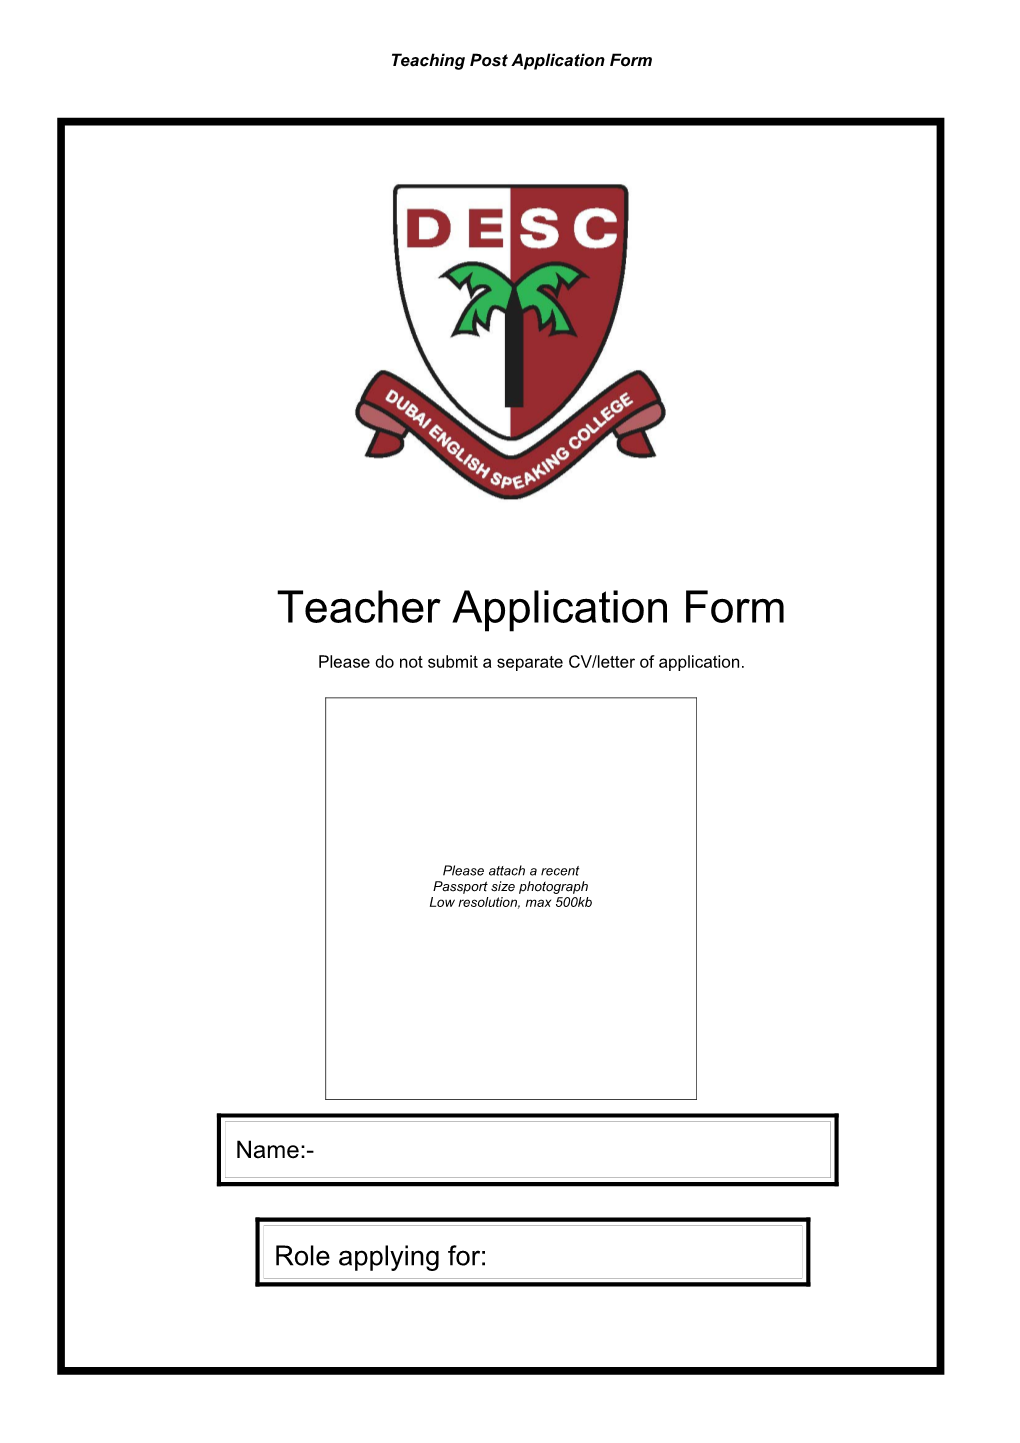 Dess Teacher Application Form 2003